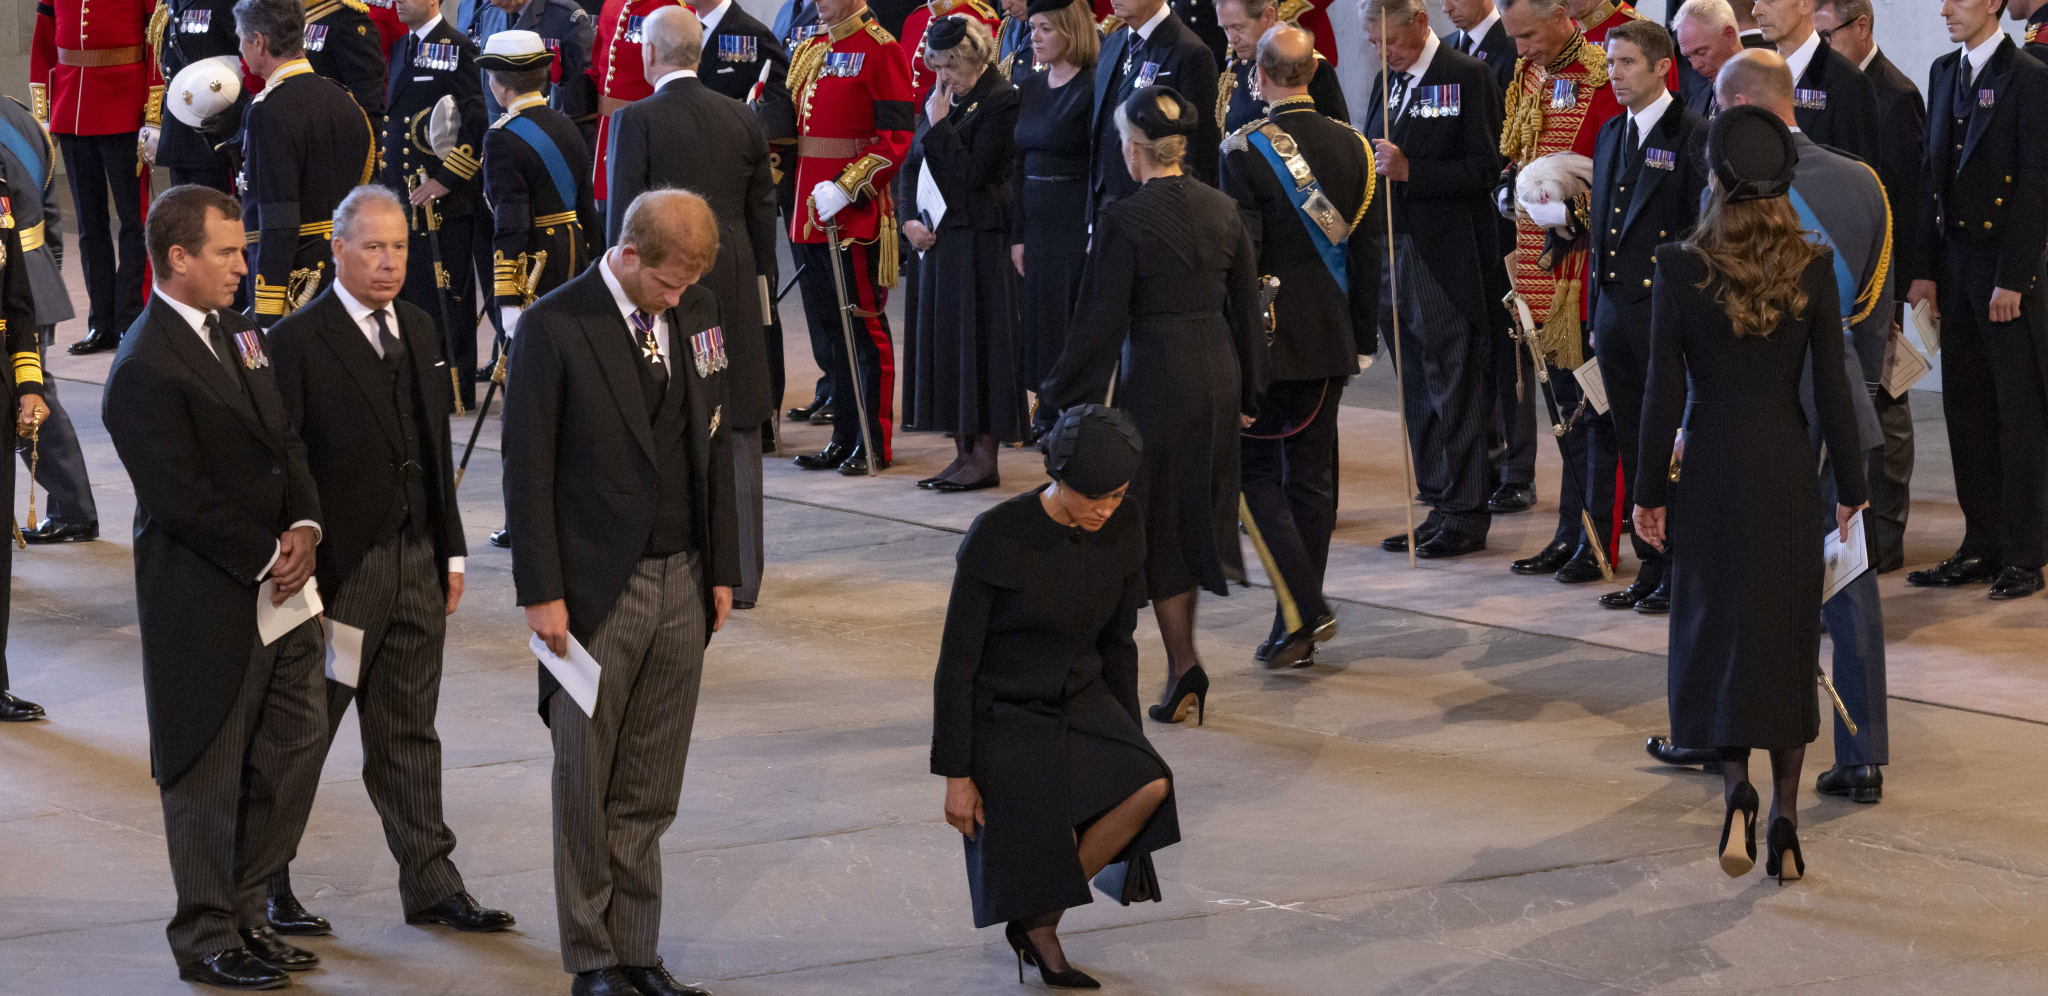 MEGAN MARKL ZGROZILA SVET Njen gest pred kraljičinim kovčegom izazvao burne reakcije u javnosti